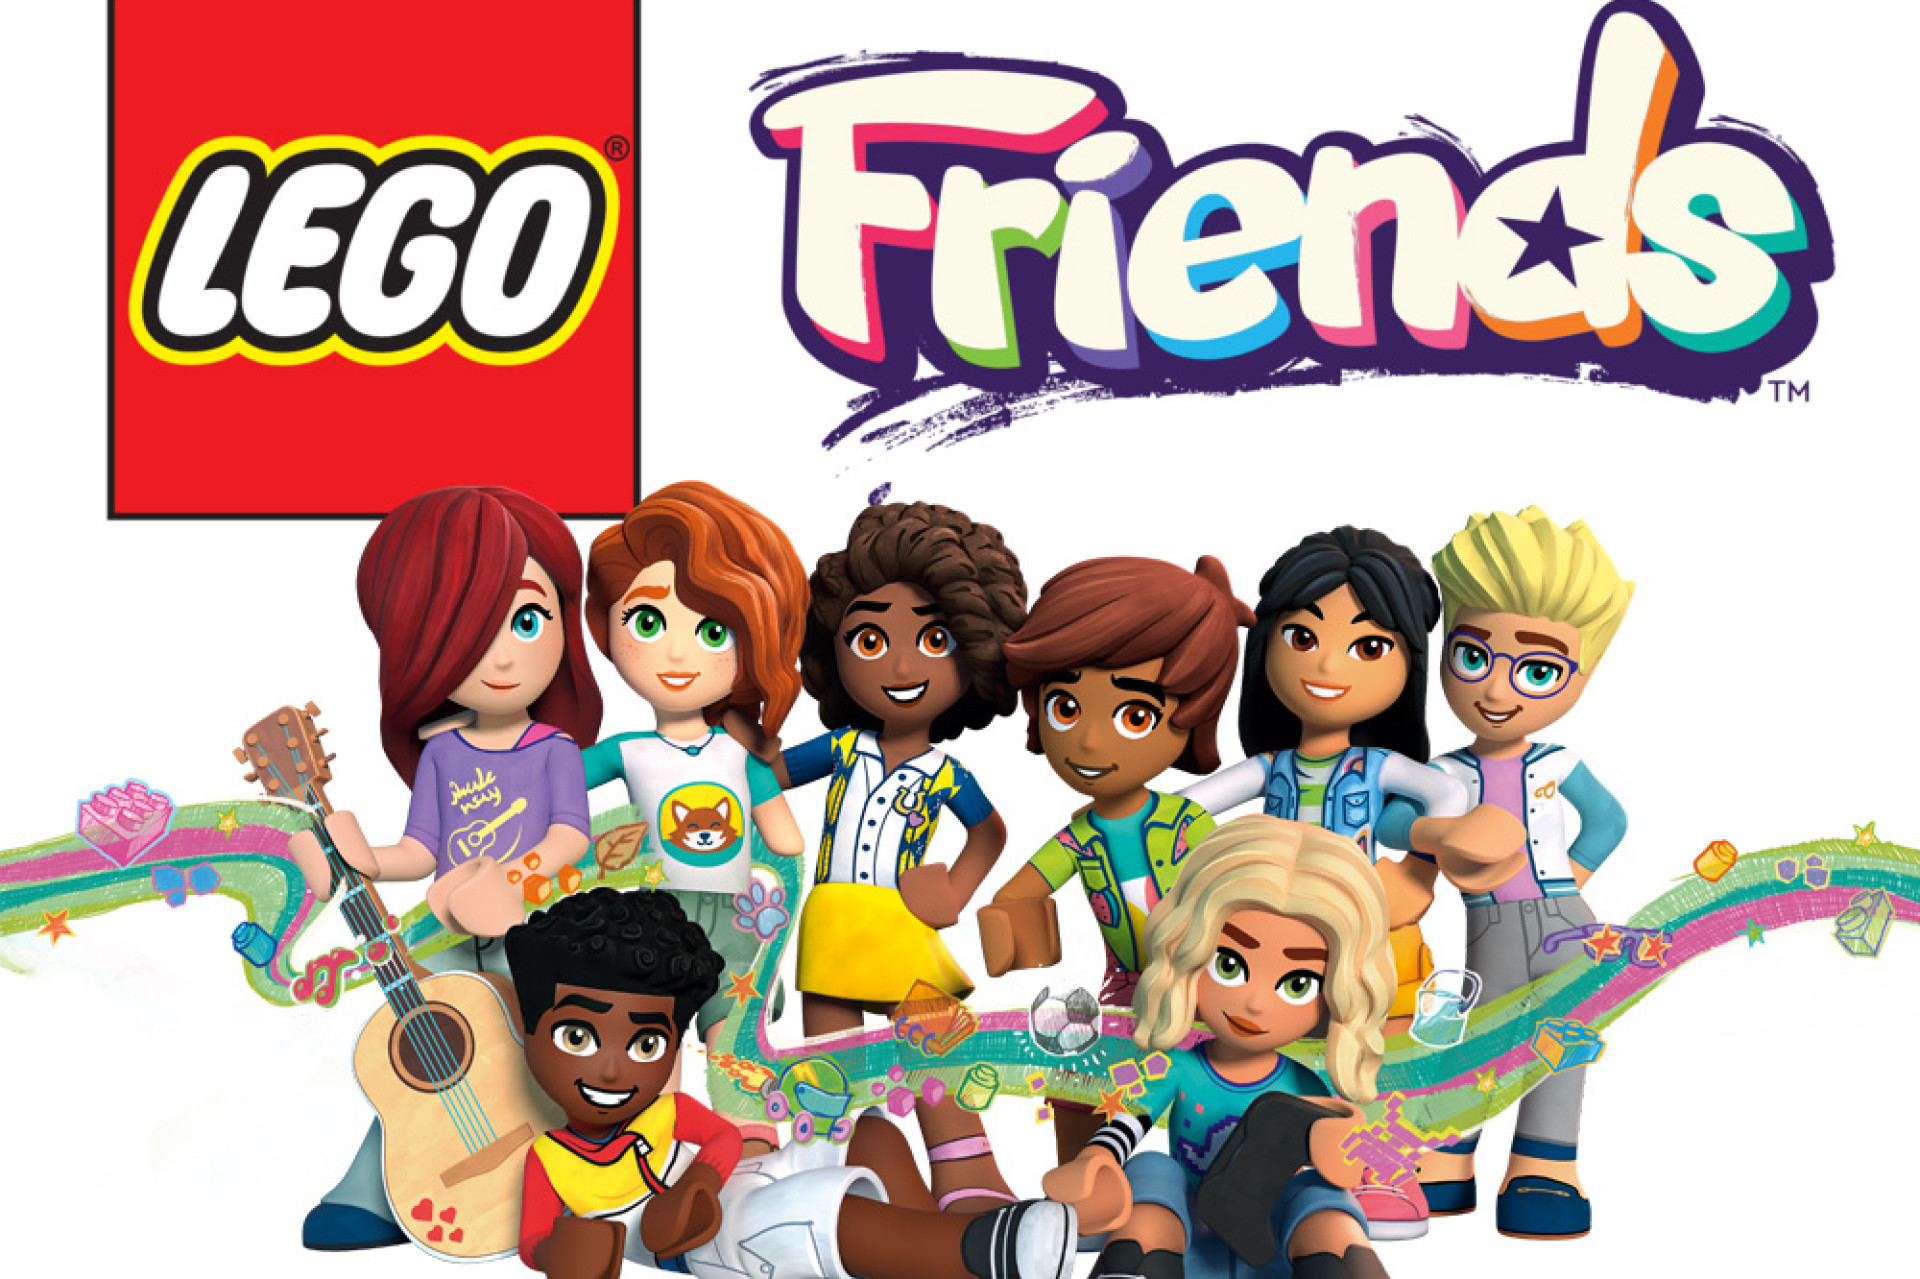 Idées de cadeaux La gamme Lego Friends évolue vers plus de diversité